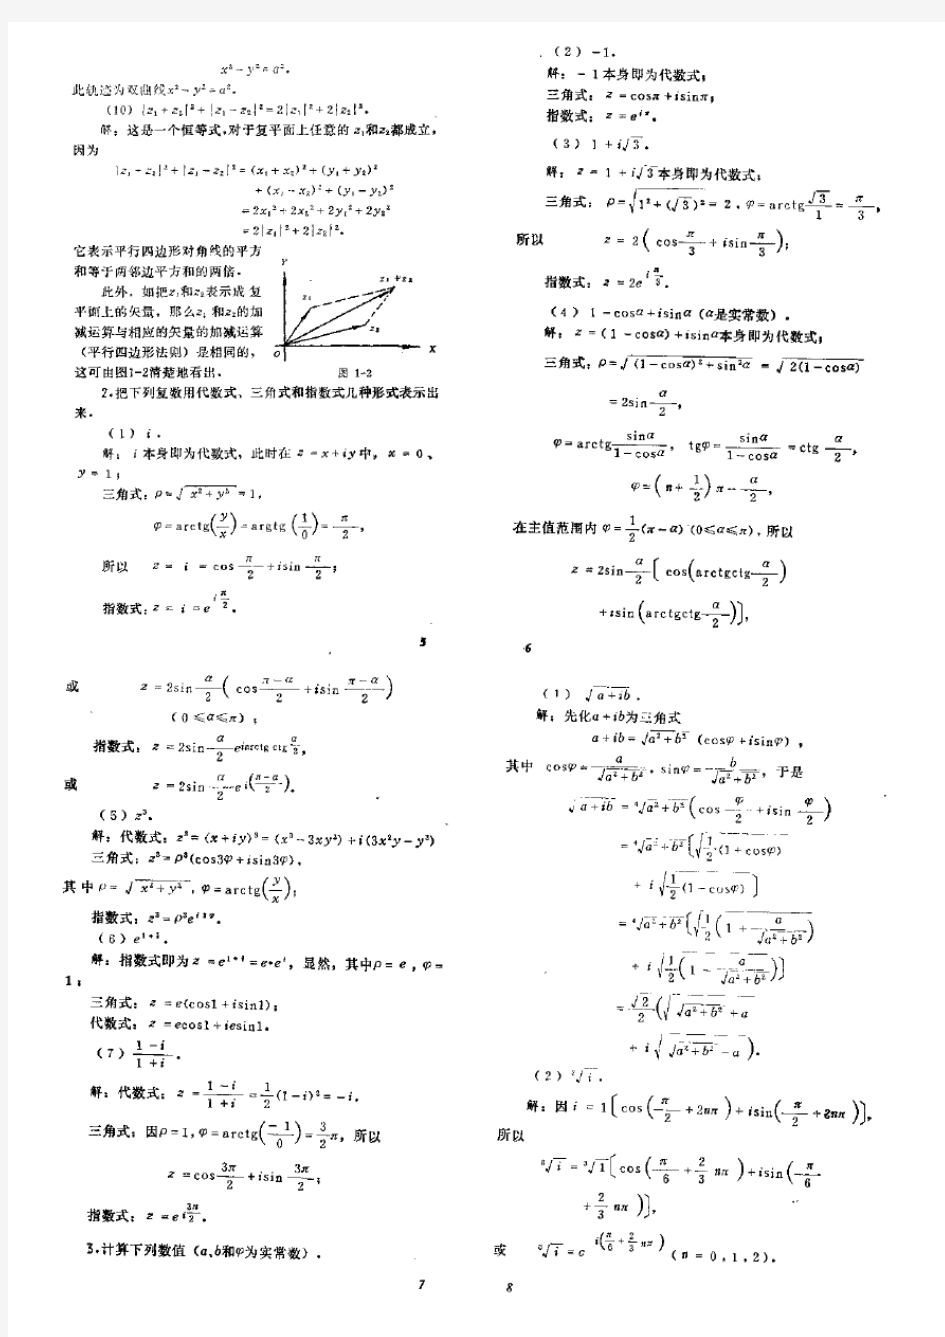 数学物理方法答案_梁昆淼编_(第四版)